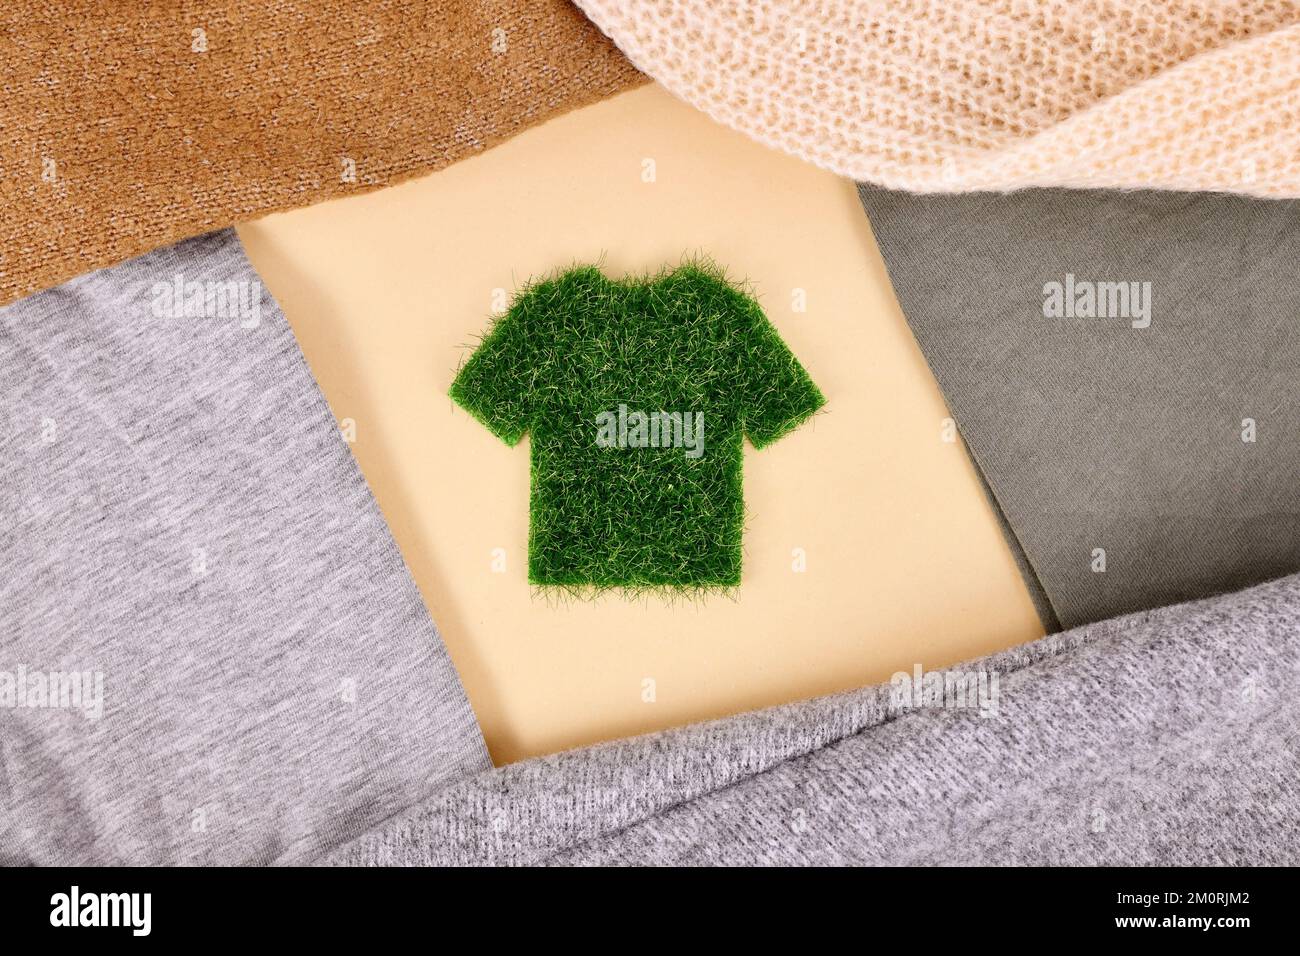 Concept de vêtements respectueux de l'environnement avec chemise en herbe entourée de chandails Banque D'Images